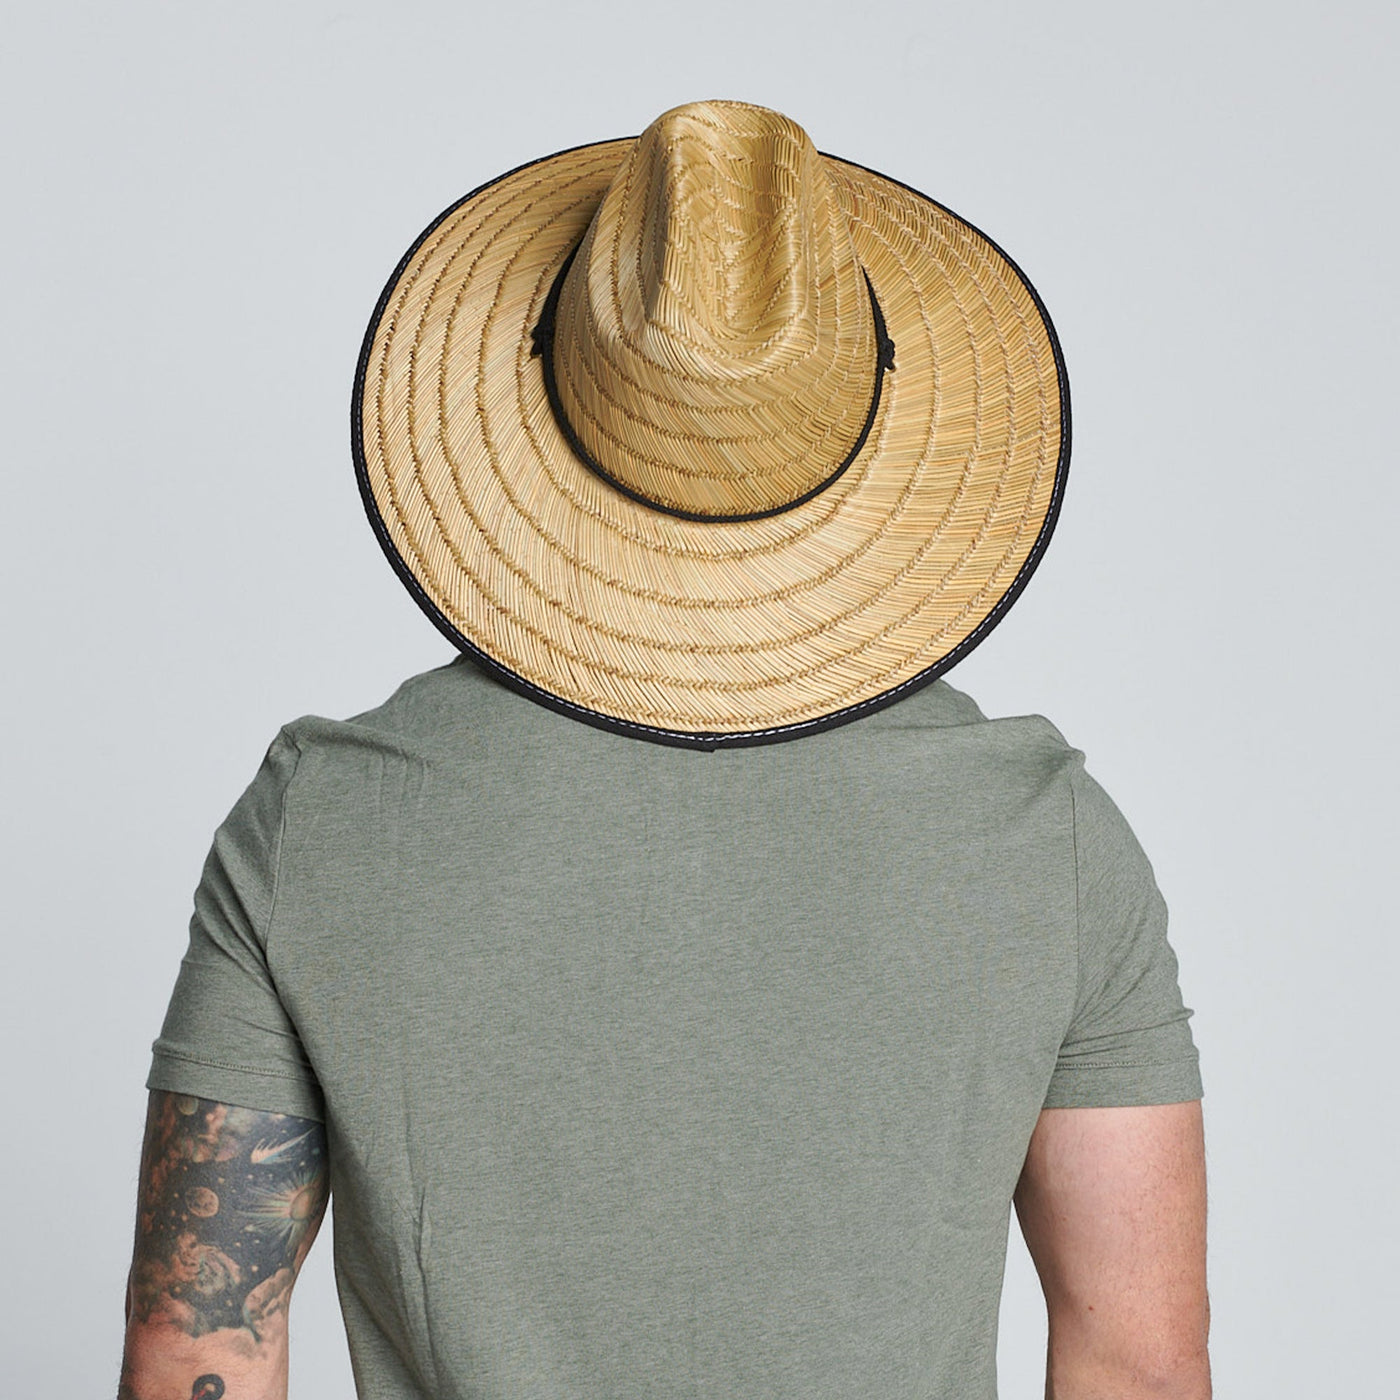 LIFEGUARD - Men's Lifeguard Hat